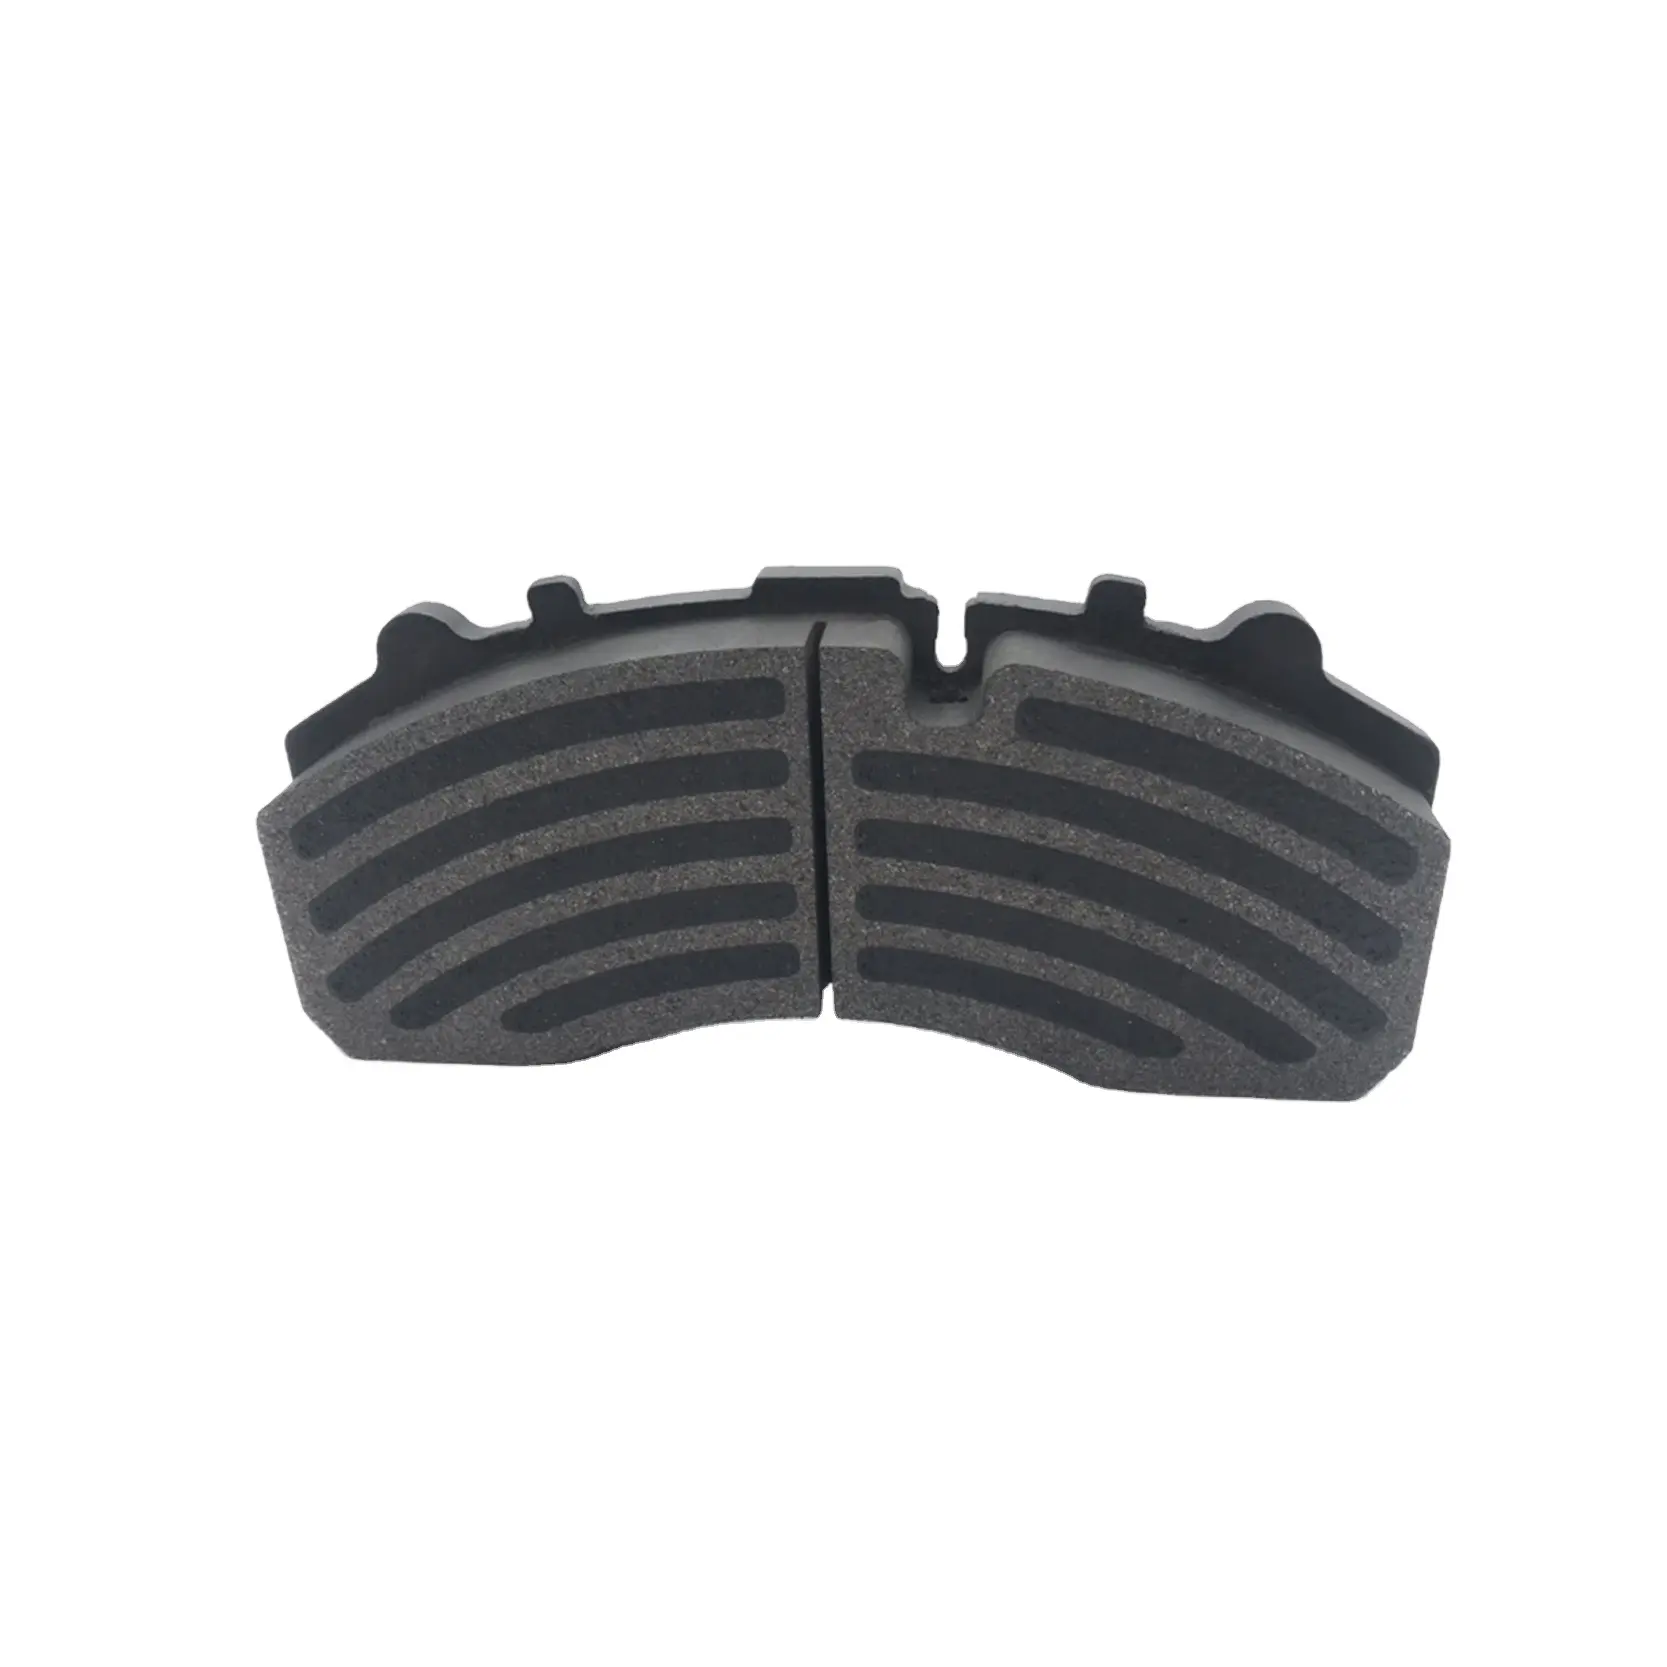 Good Quality Brake Pads OEM  WVA 29087 Brake Pads For BENZ Scani Actros Man Daf Semi-metallic 485gb3191c 485gb3191 20972295